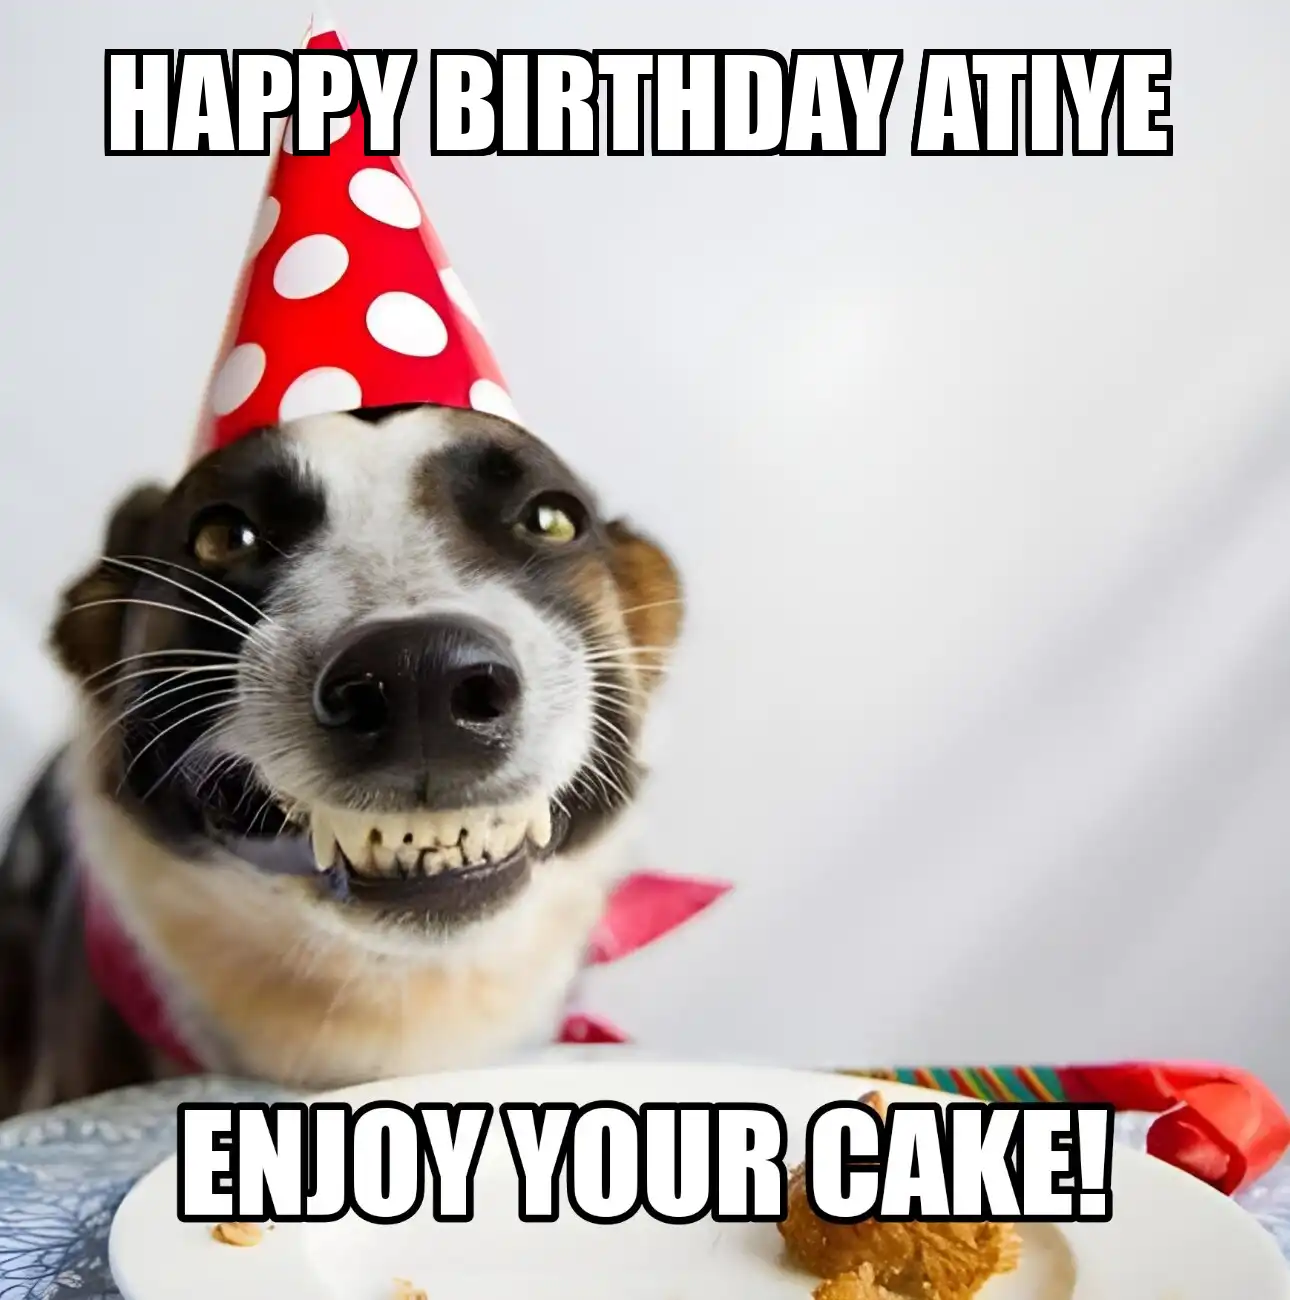 Happy Birthday Atiye Enjoy Your Cake Dog Meme